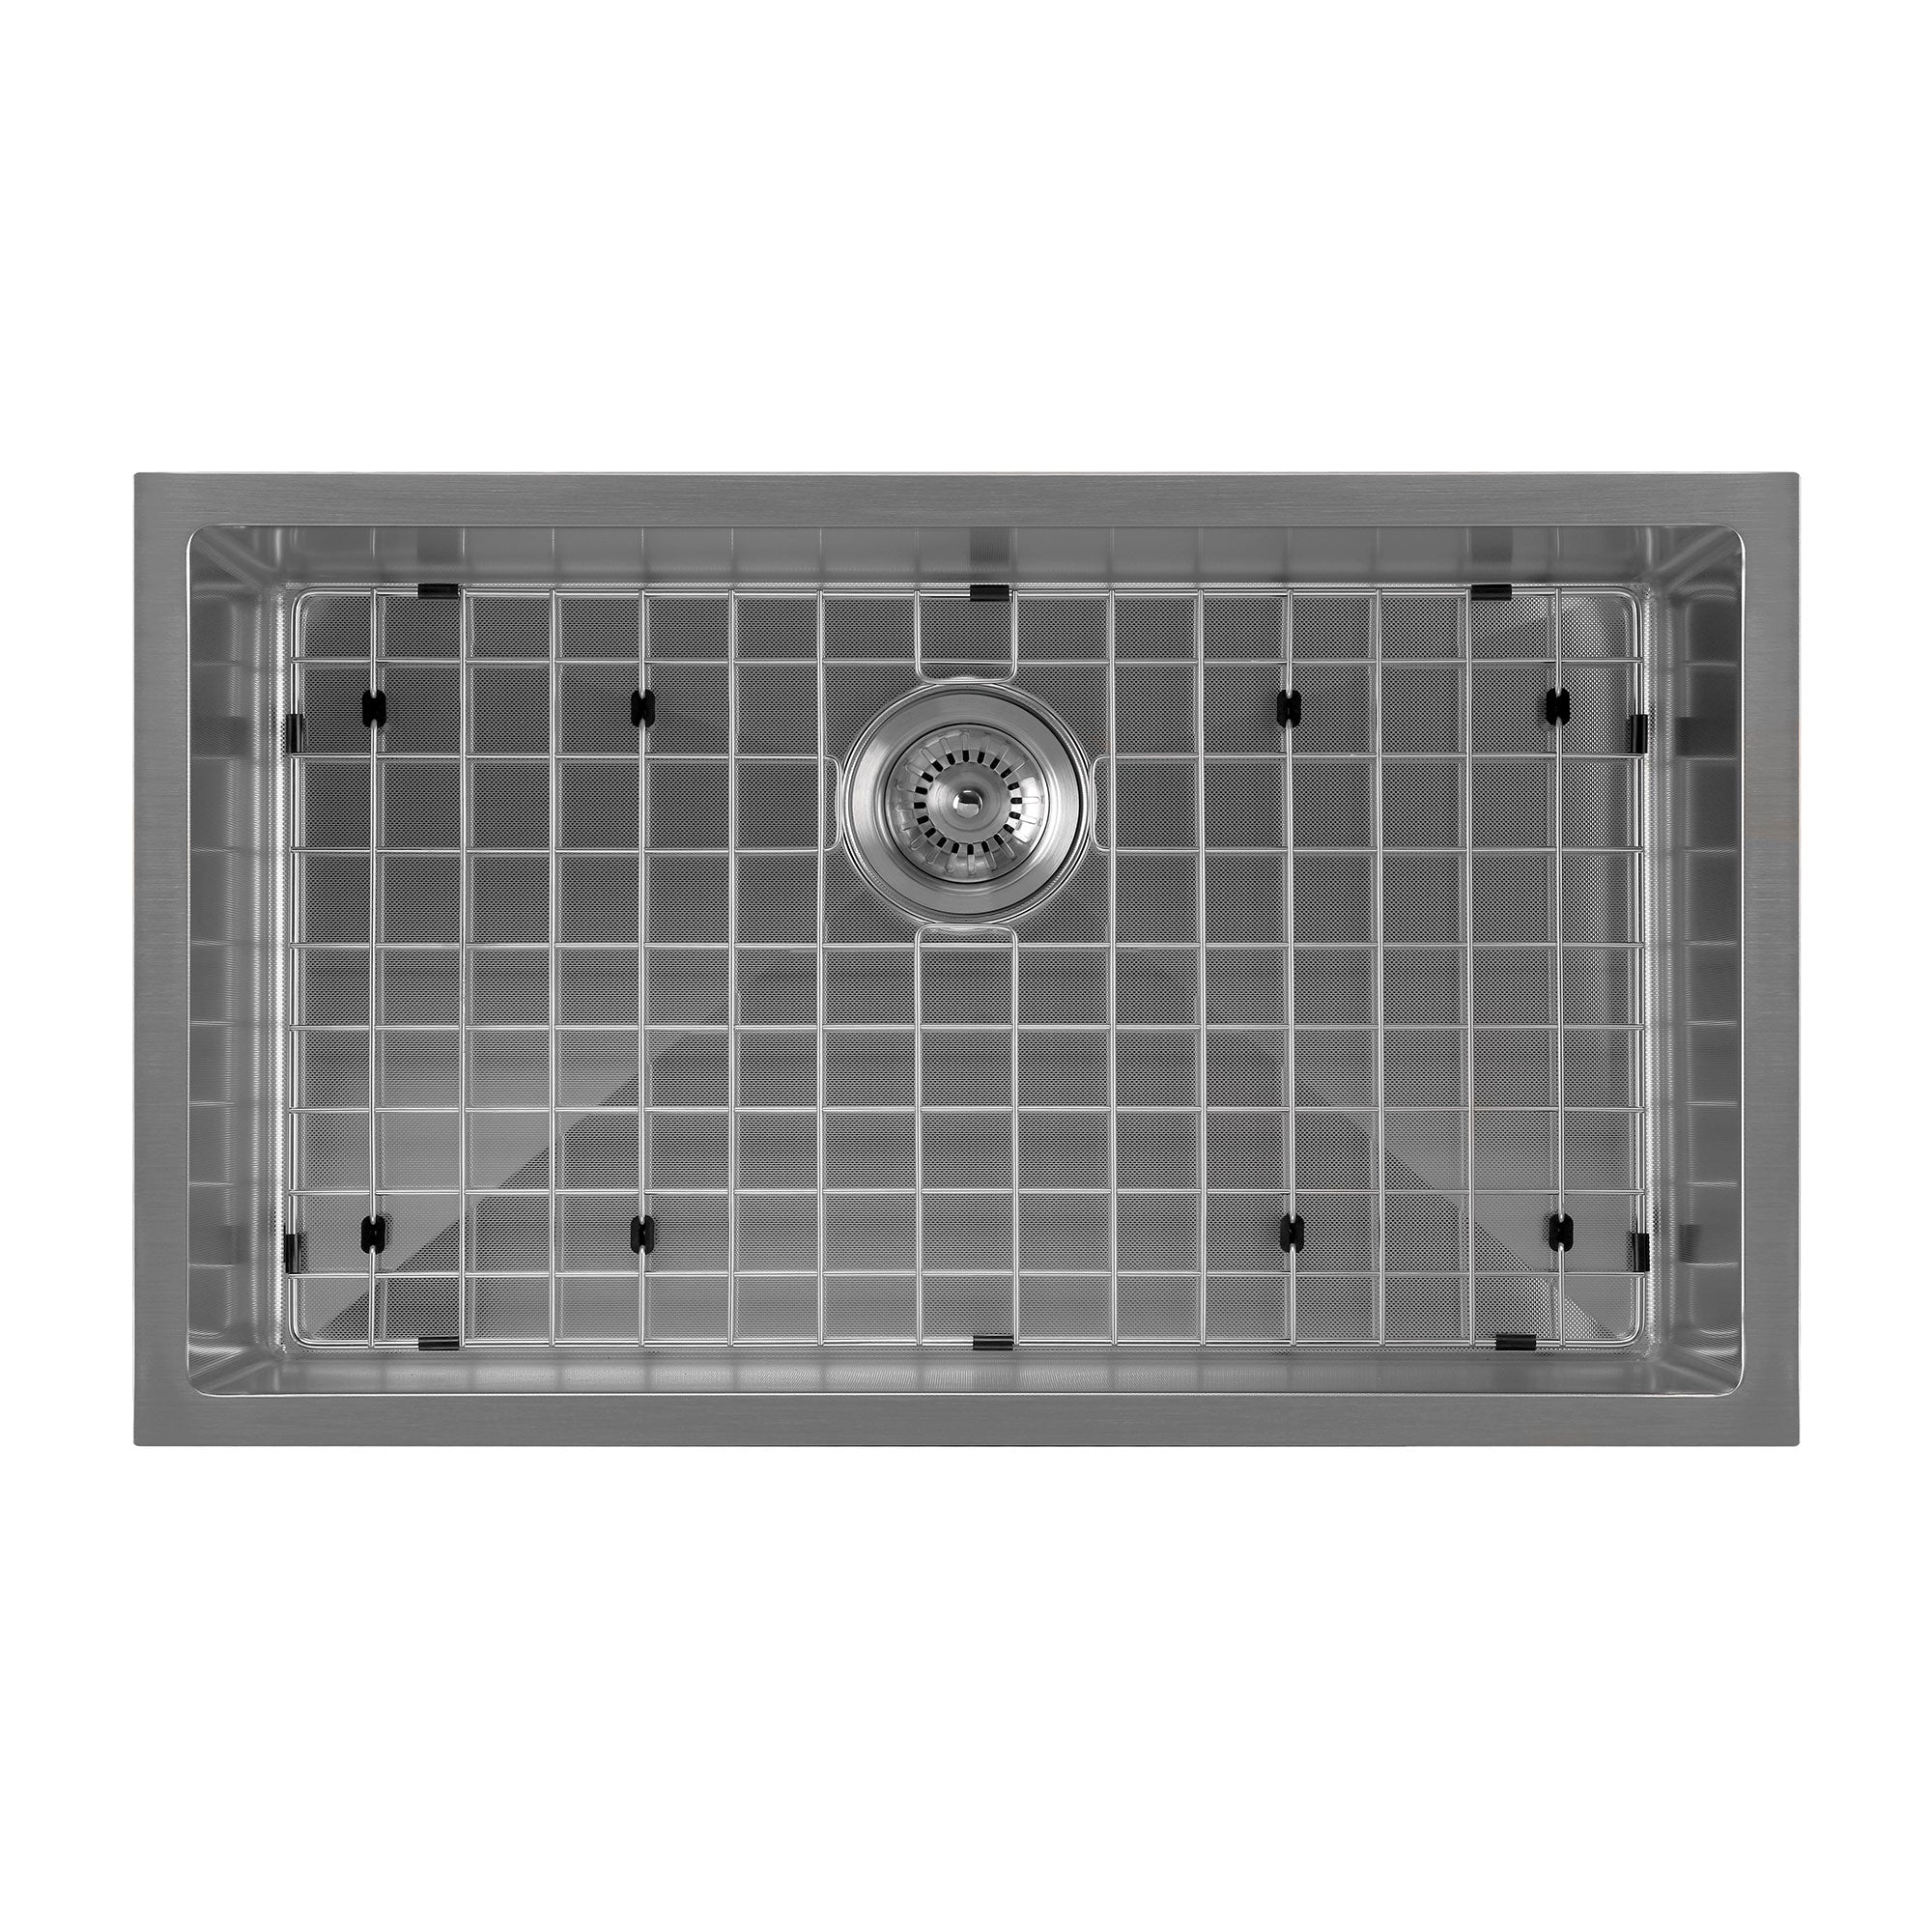 16 Gauge Durable Undermount Stainless Steel Kitchen Sink Grid Strainer  Package